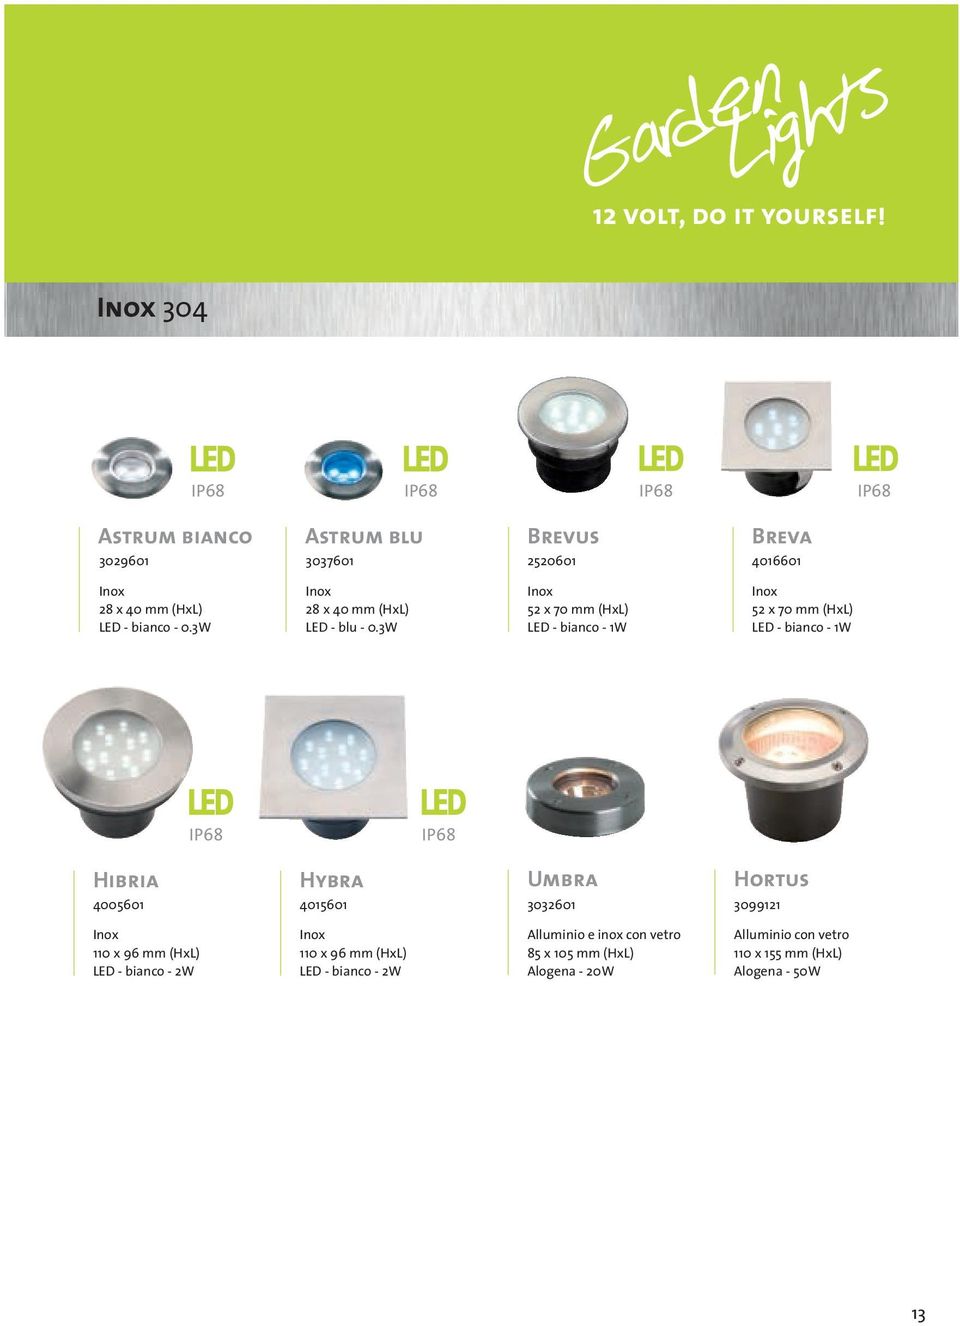 3W Inox 52 x 70 mm (HxL) LED - bianco - 1W Inox 52 x 70 mm (HxL) LED - bianco - 1W Hibria Hybra 4005601 4015601 Umbra